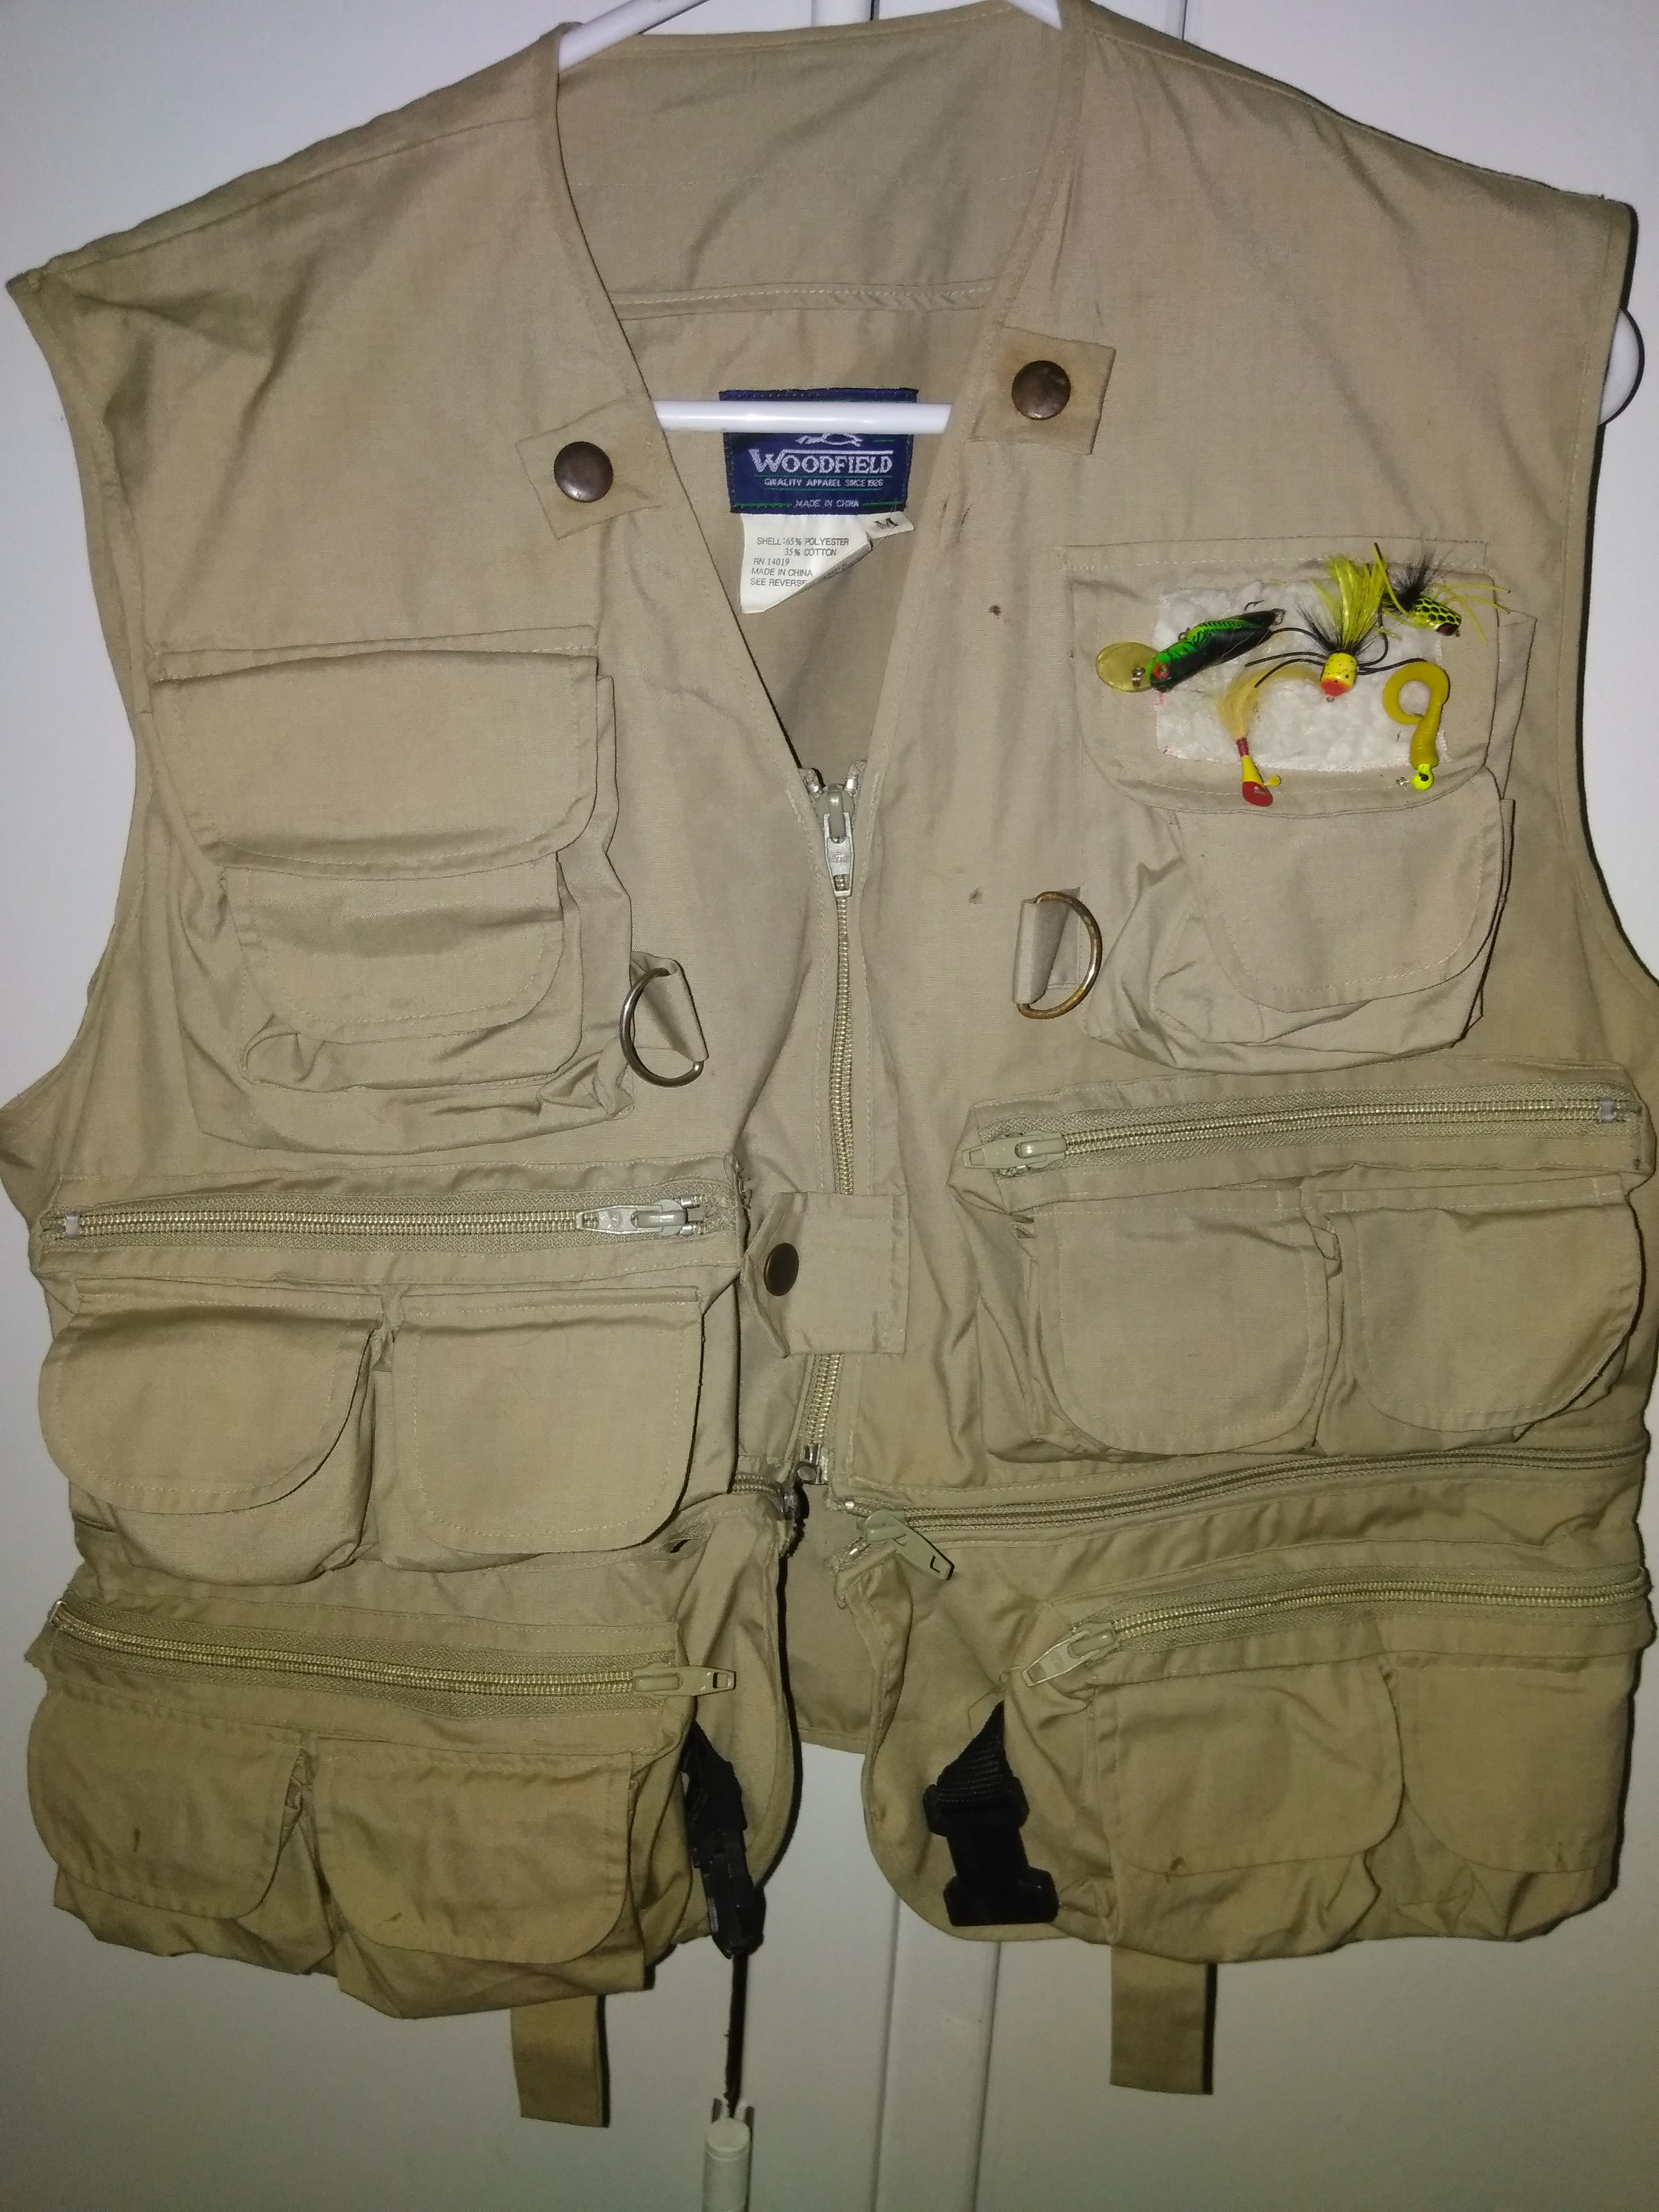 Fishing vest for kids